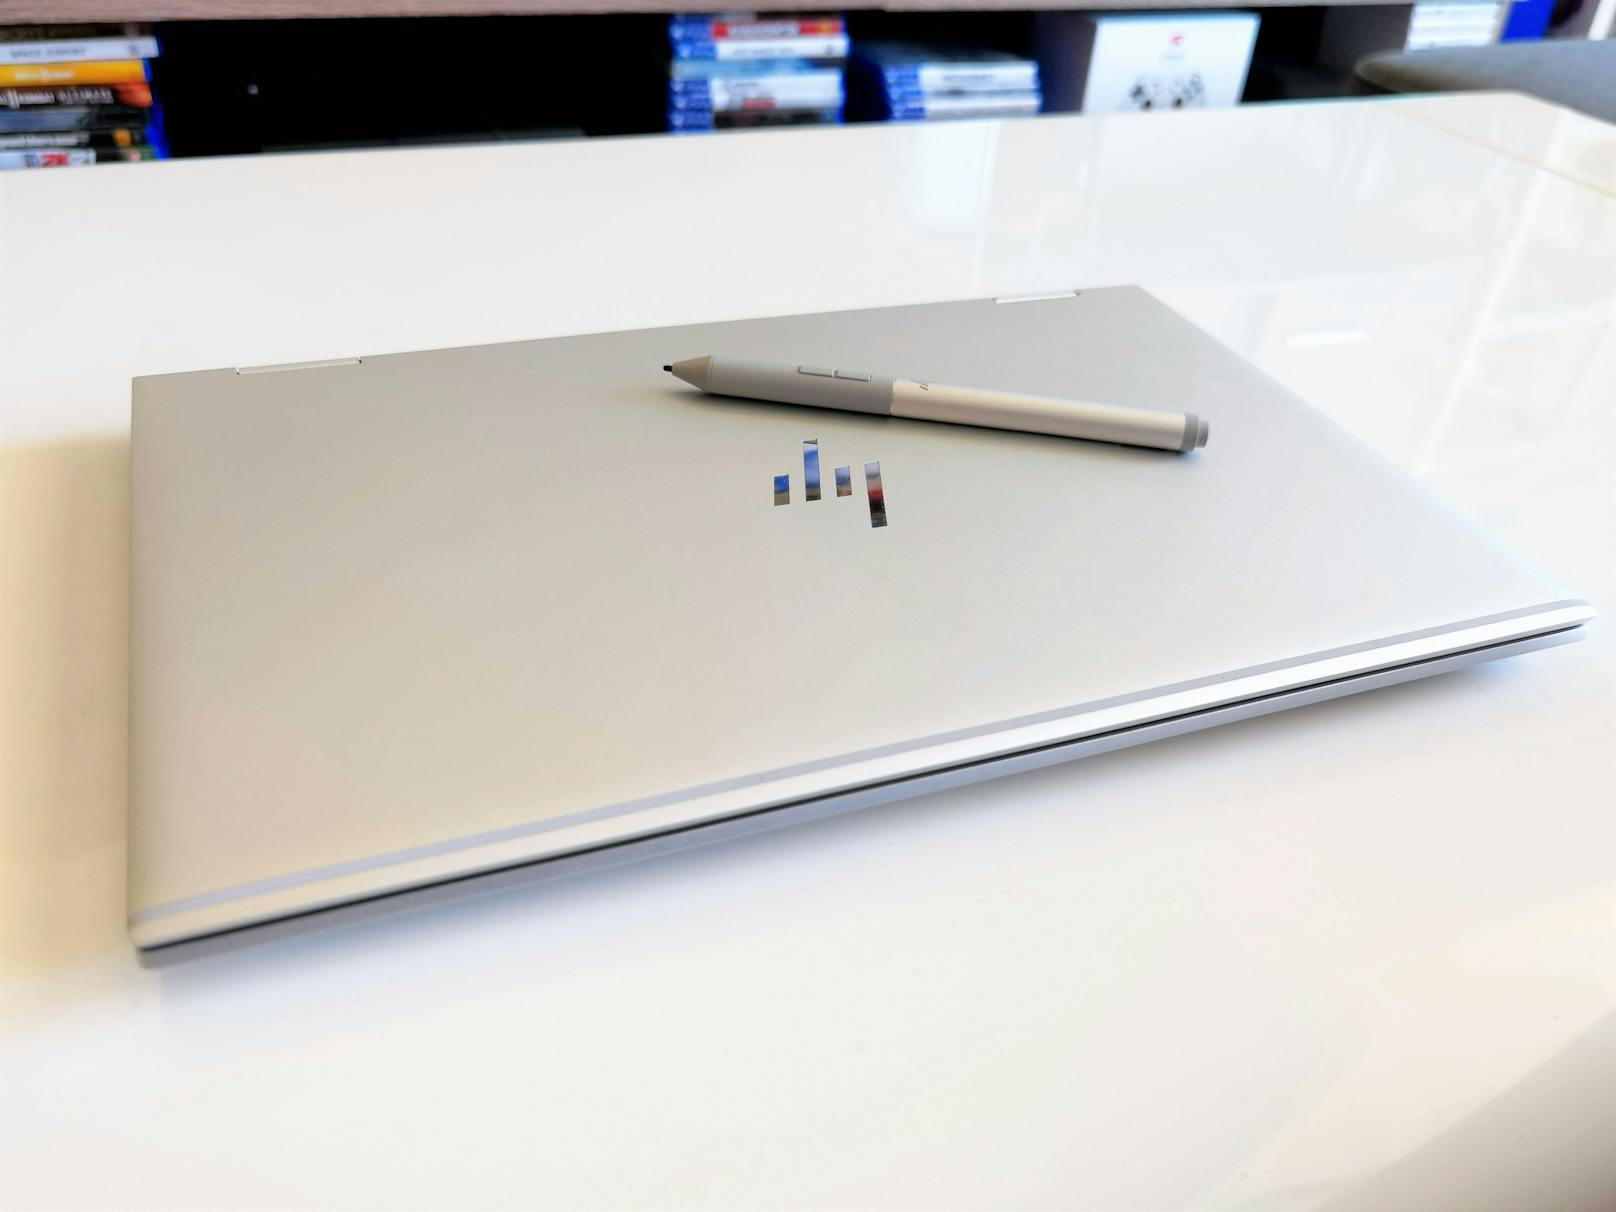 Bei der Leistung ist das HP EliteBook x360 1040 G8 über alle Zweifel erhaben: Es schupft selbst komplexeste Anwendungen und Multi-Tasking ohne Einbrüche und verfügt sowohl im Notebook-, als auch im Tablet-Modus über extreme Power.